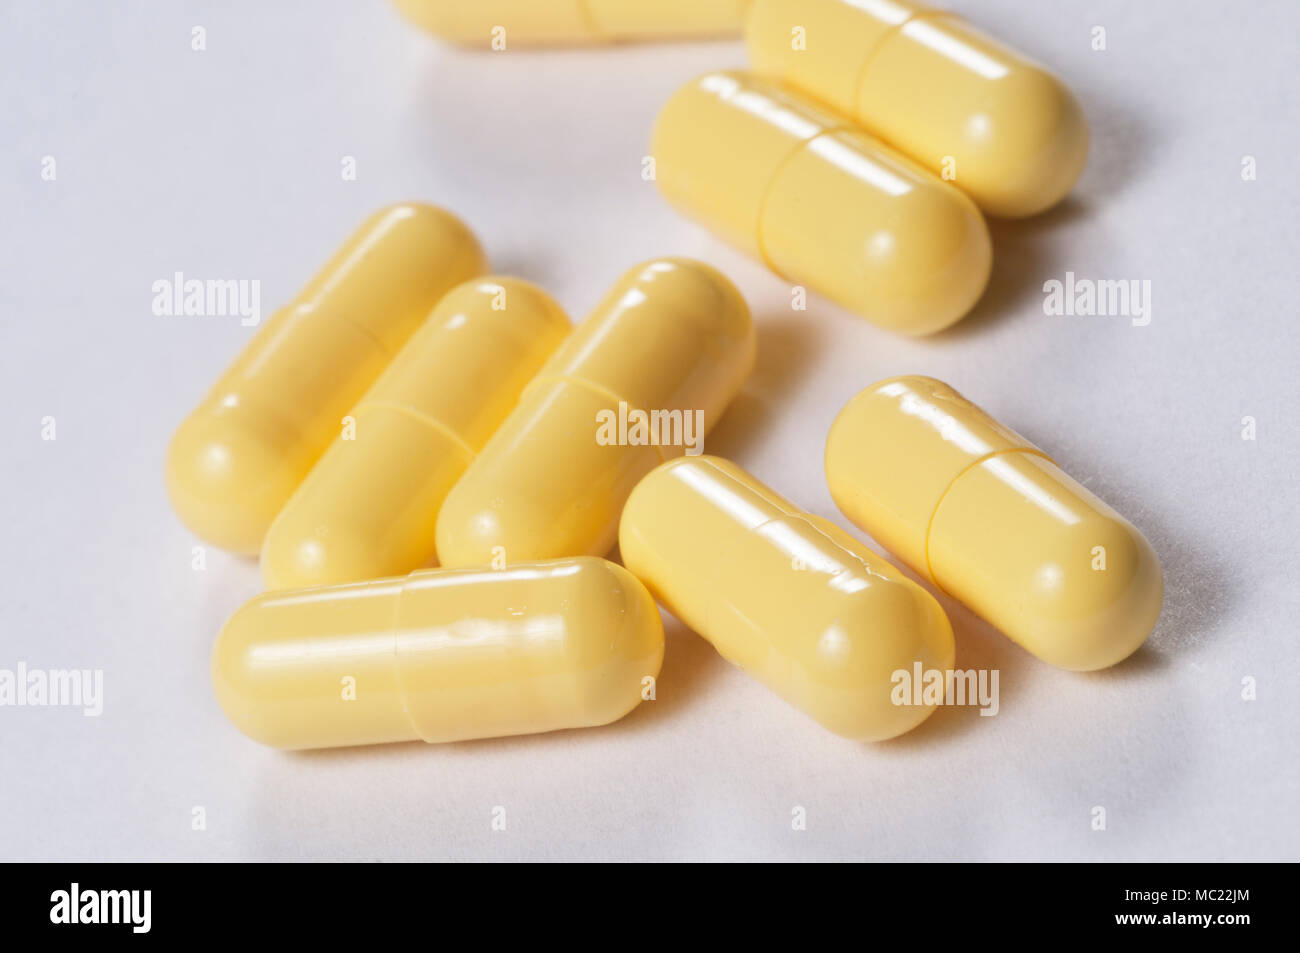 Антибиотик мочеполовая. Желтые капсулы. Антибиотик желтые капсулы. Антибиотик в капсулах желтого цвета. Антибиотики желтые капсулы название.